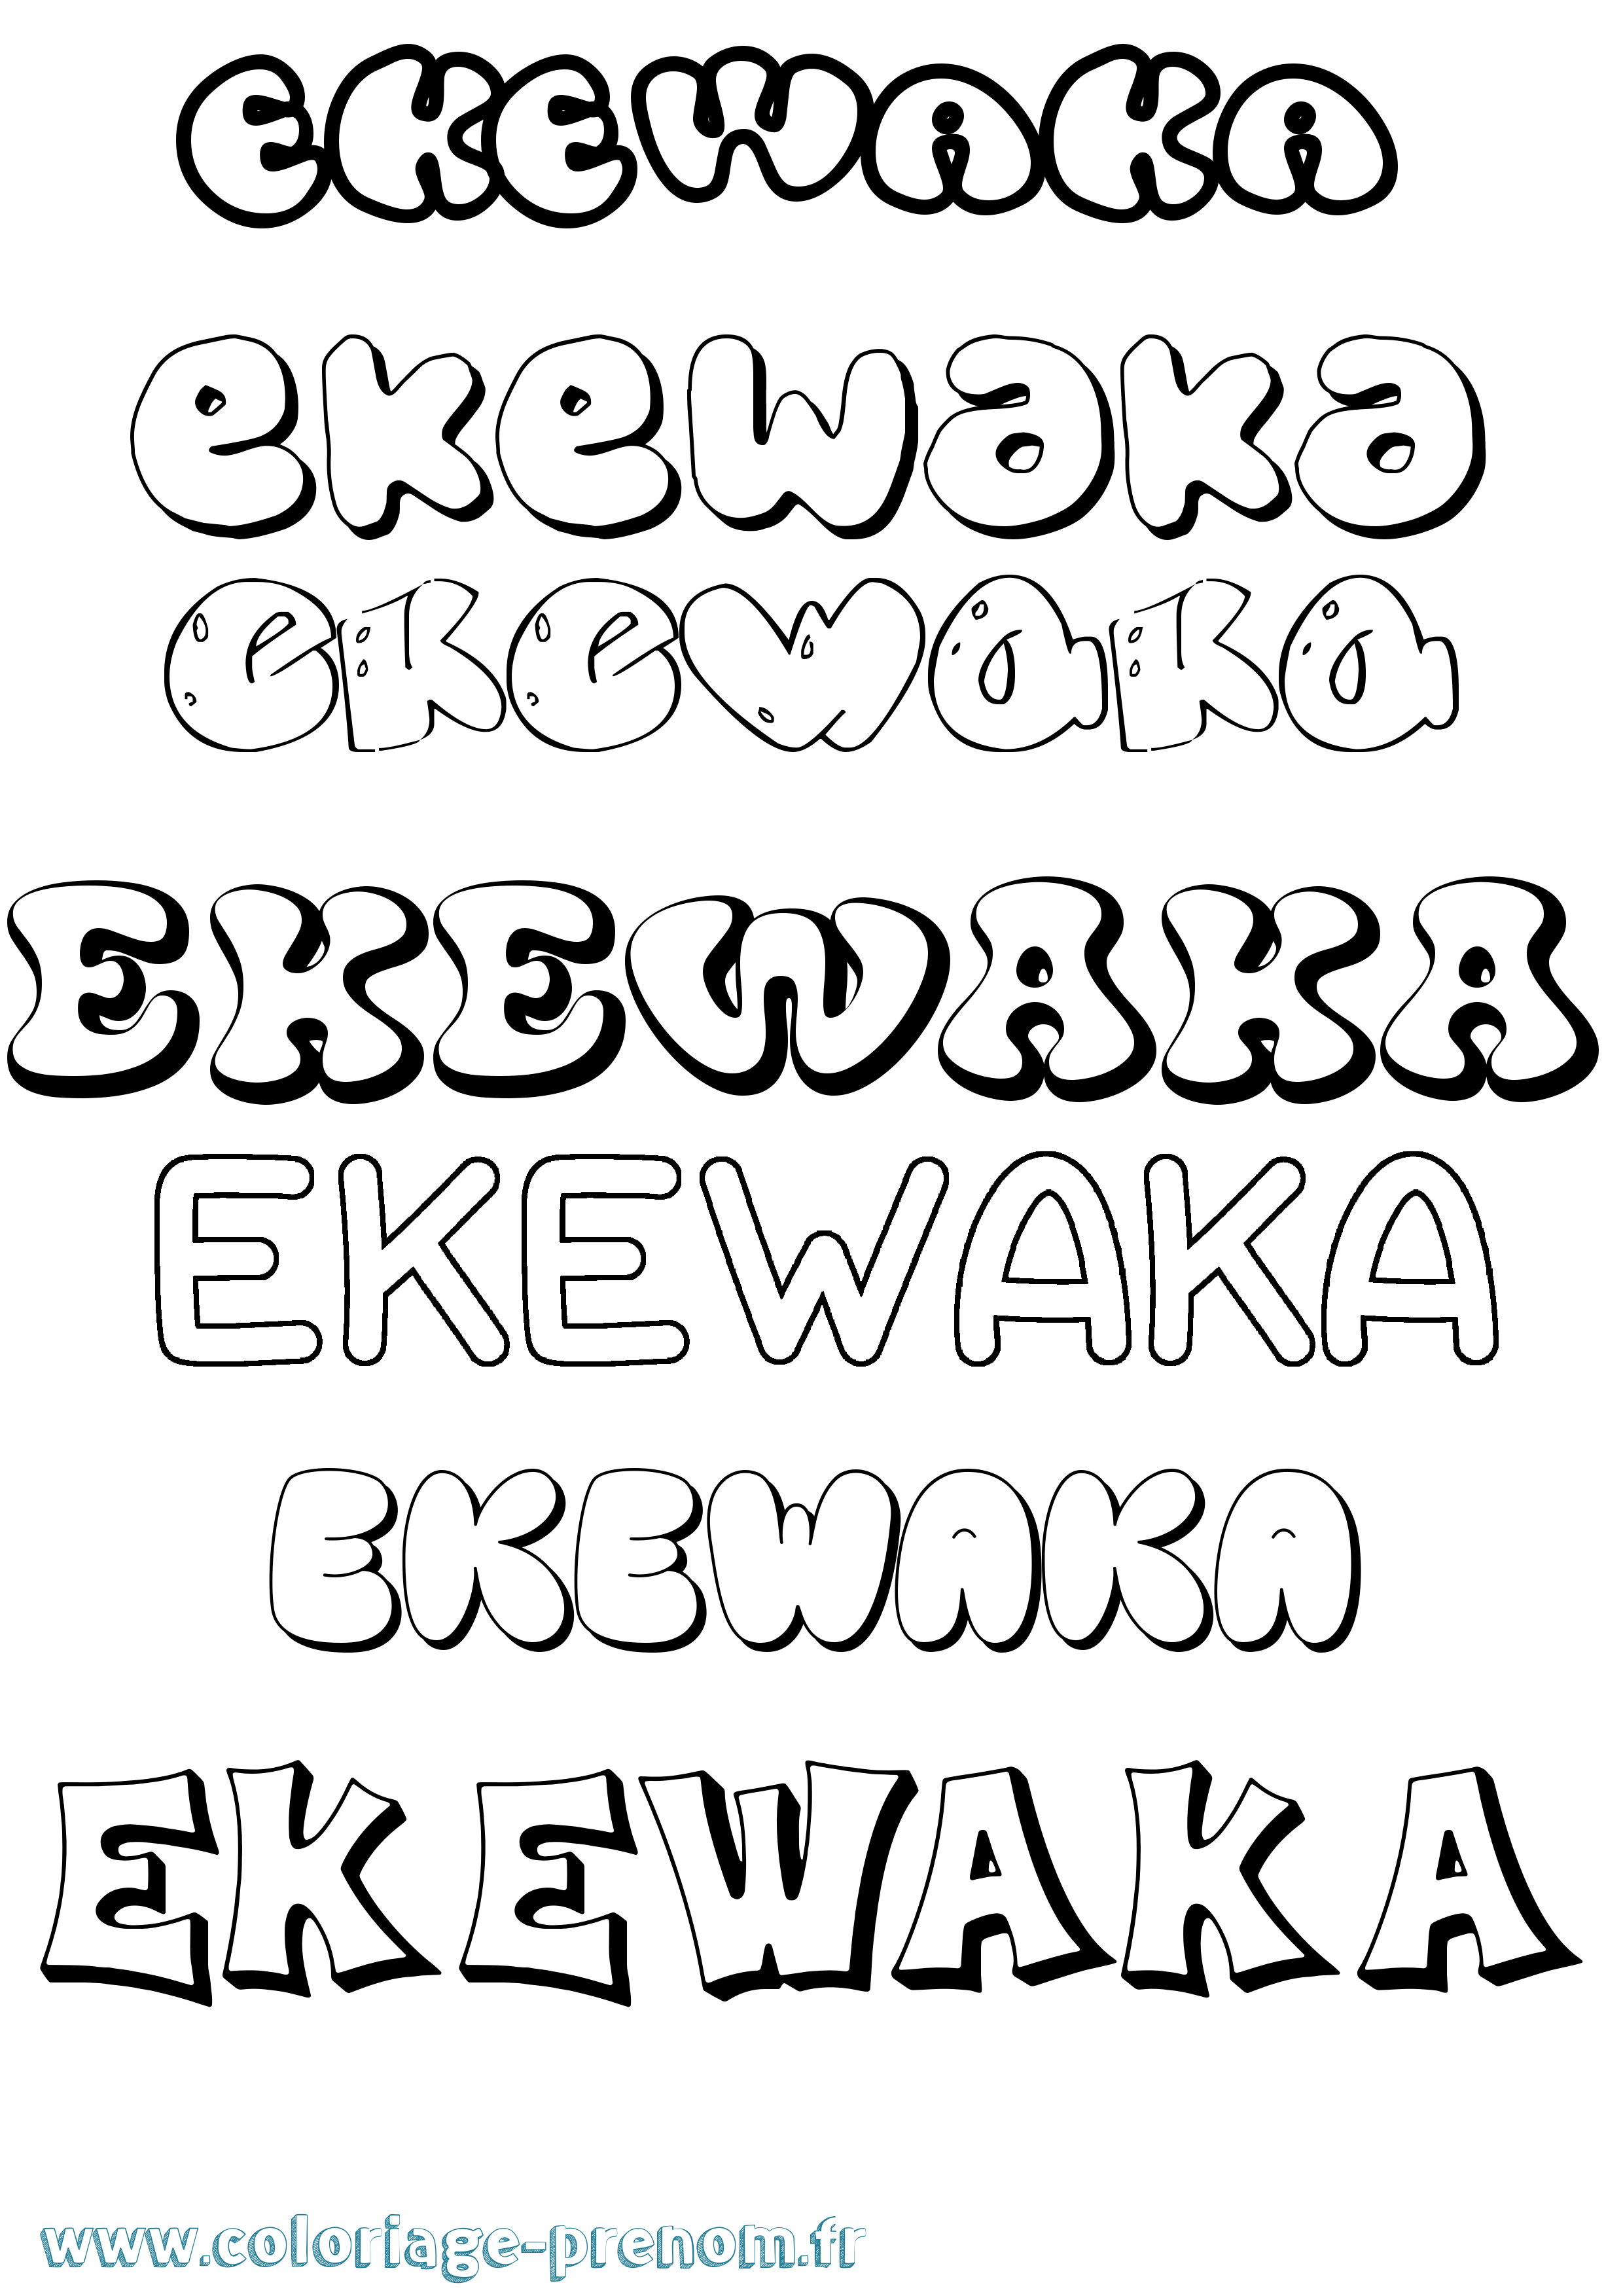 Coloriage prénom Ekewaka Bubble